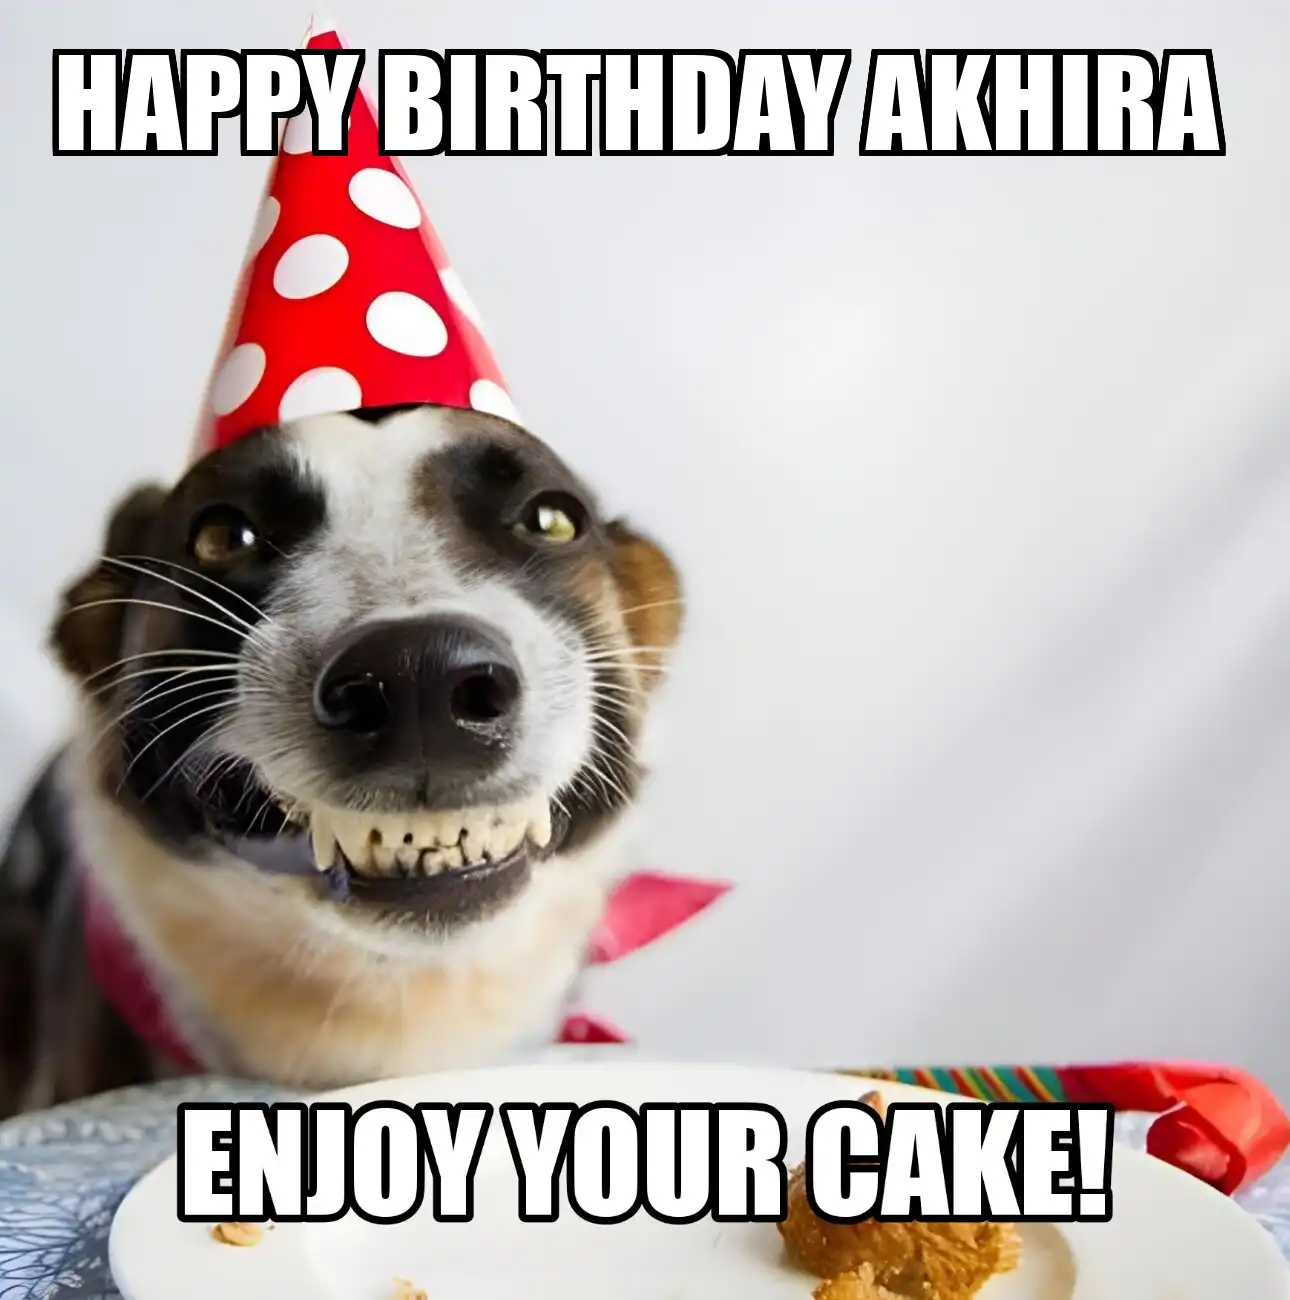 Happy Birthday Akhira Enjoy Your Cake Dog Meme